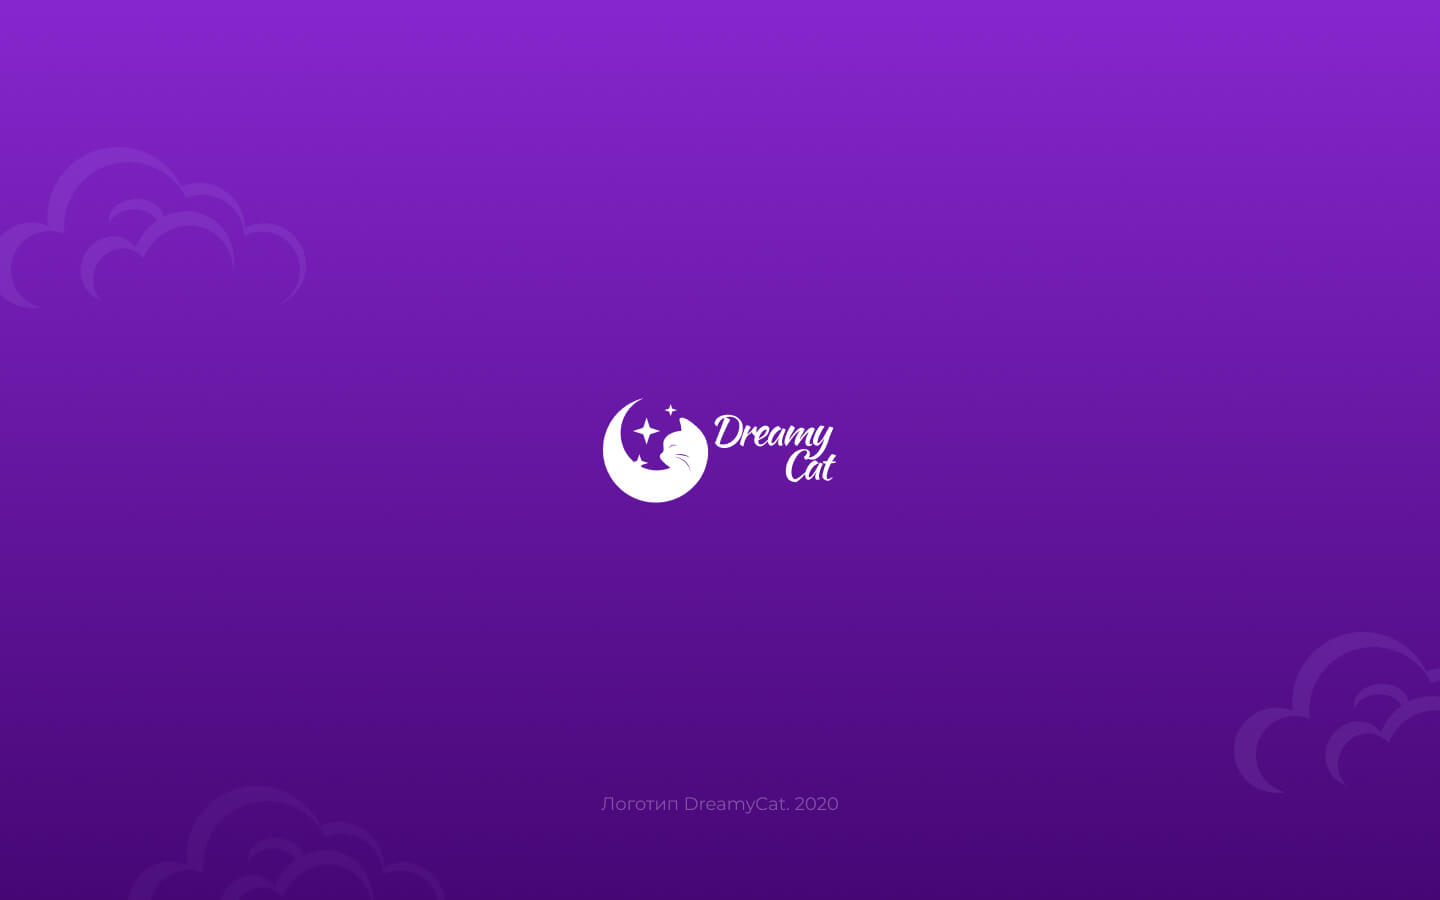 DreamyCat_logo_06